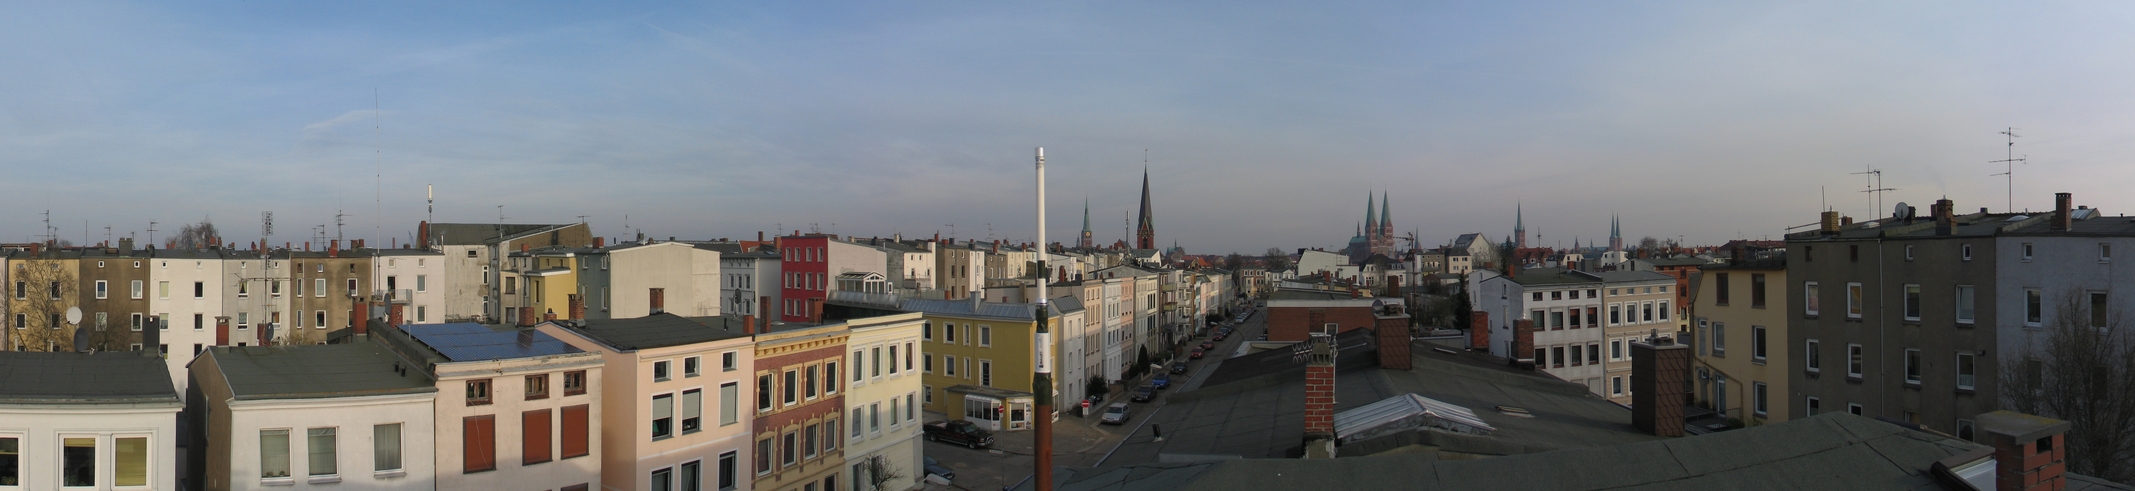 Bild von einem Dach in Lübeck mit Antenne in Bildmitte